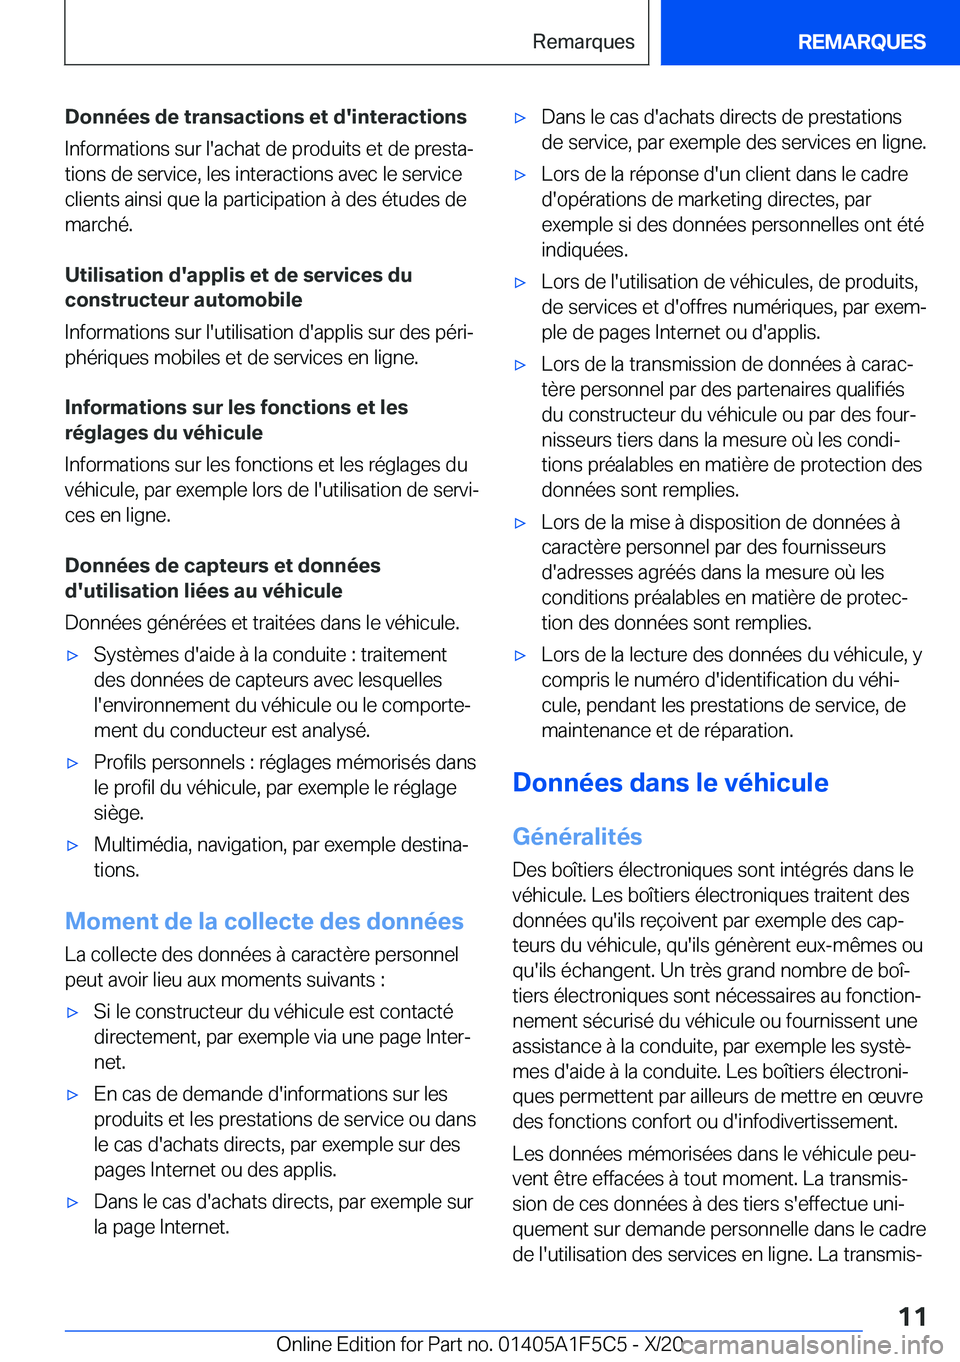 BMW X4 M 2021  Notices Demploi (in French) �D�o�n�n�é�e�s��d�e��t�r�a�n�s�a�c�t�i�o�n�s��e�t��d�'�i�n�t�e�r�a�c�t�i�o�n�s�I�n�f�o�r�m�a�t�i�o�n�s��s�u�r��l�'�a�c�h�a�t��d�e��p�r�o�d�u�i�t�s��e�t��d�e��p�r�e�s�t�aj
�t�i�o�n